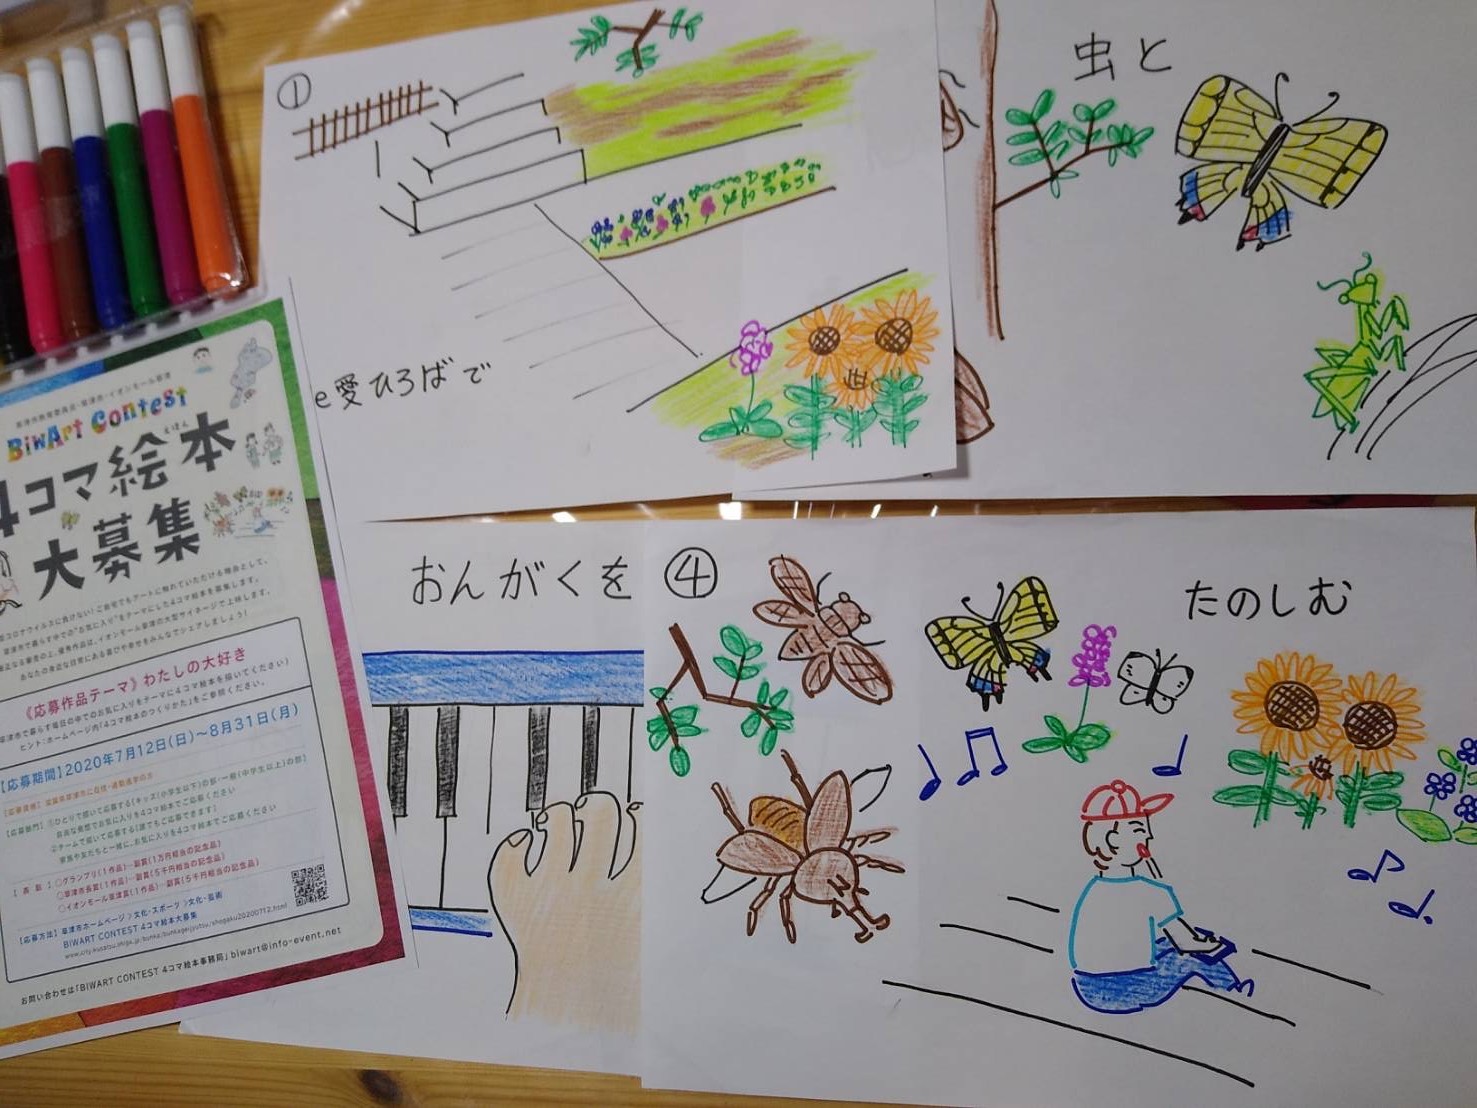 草津市限定 わたしの大好きなこと もの を４コマで描いて オリジナル絵本コンテストに応募しよう 滋賀のママがイベント 育児 遊び 学びを発信 シガマンマ ピースマム